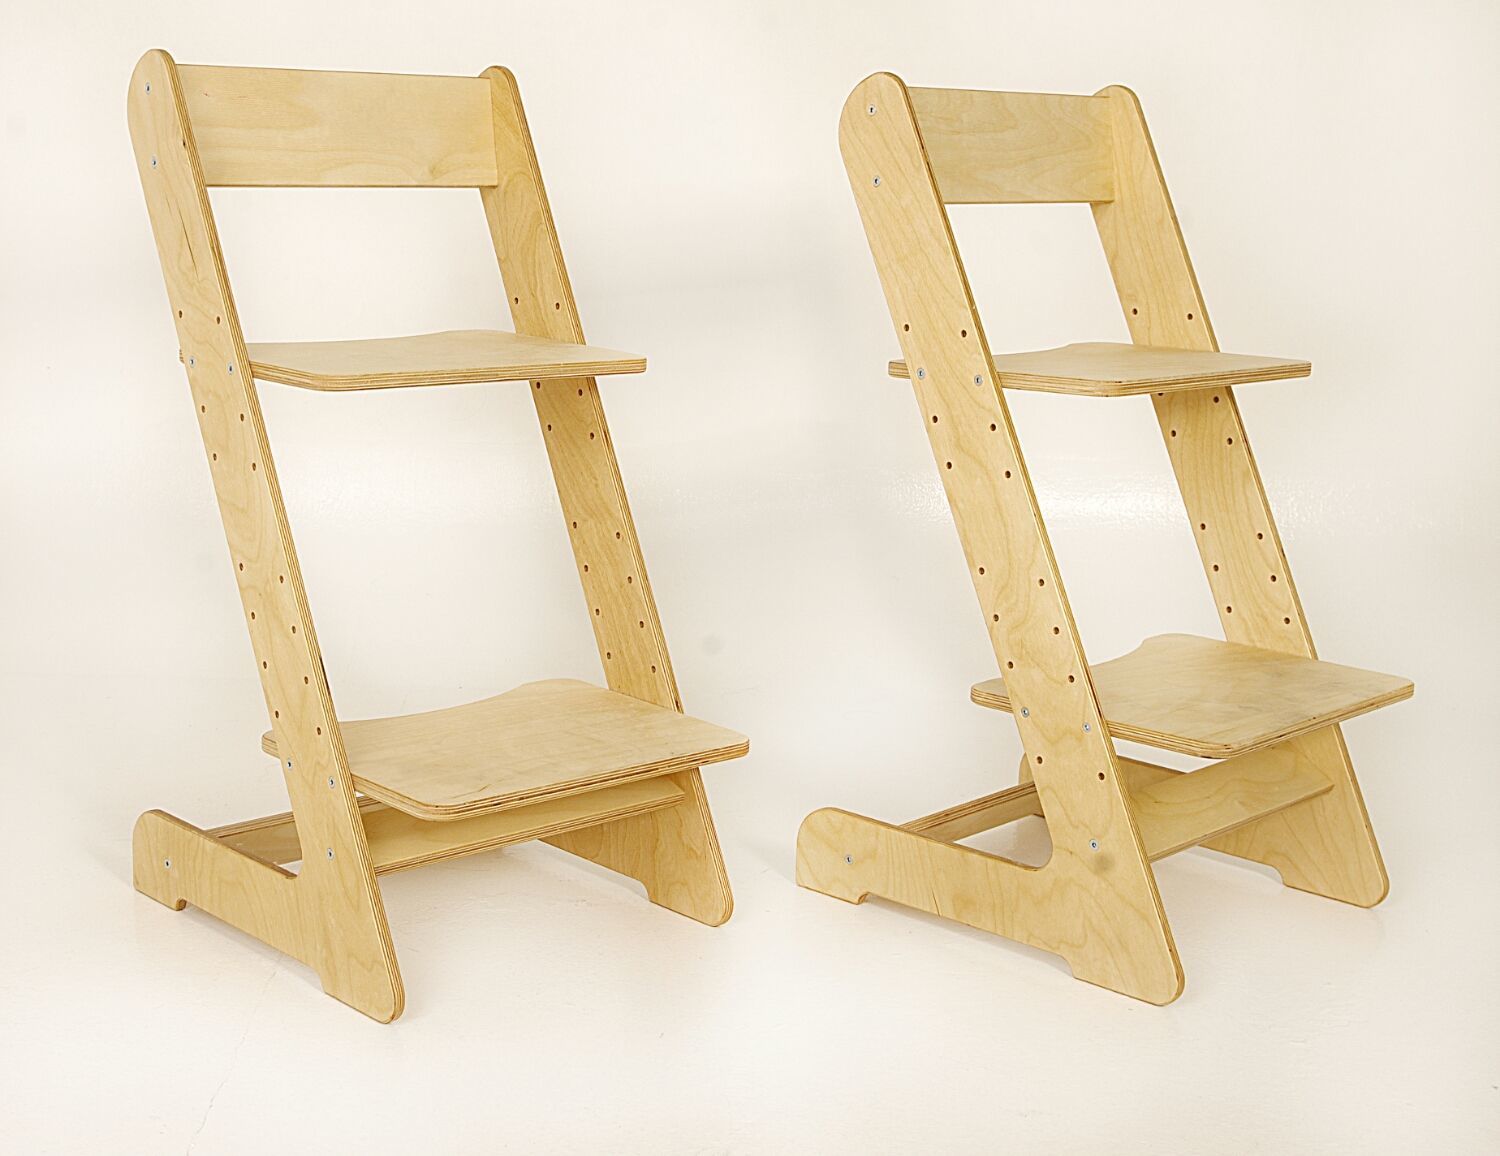 стул детский деревянный регулируемый